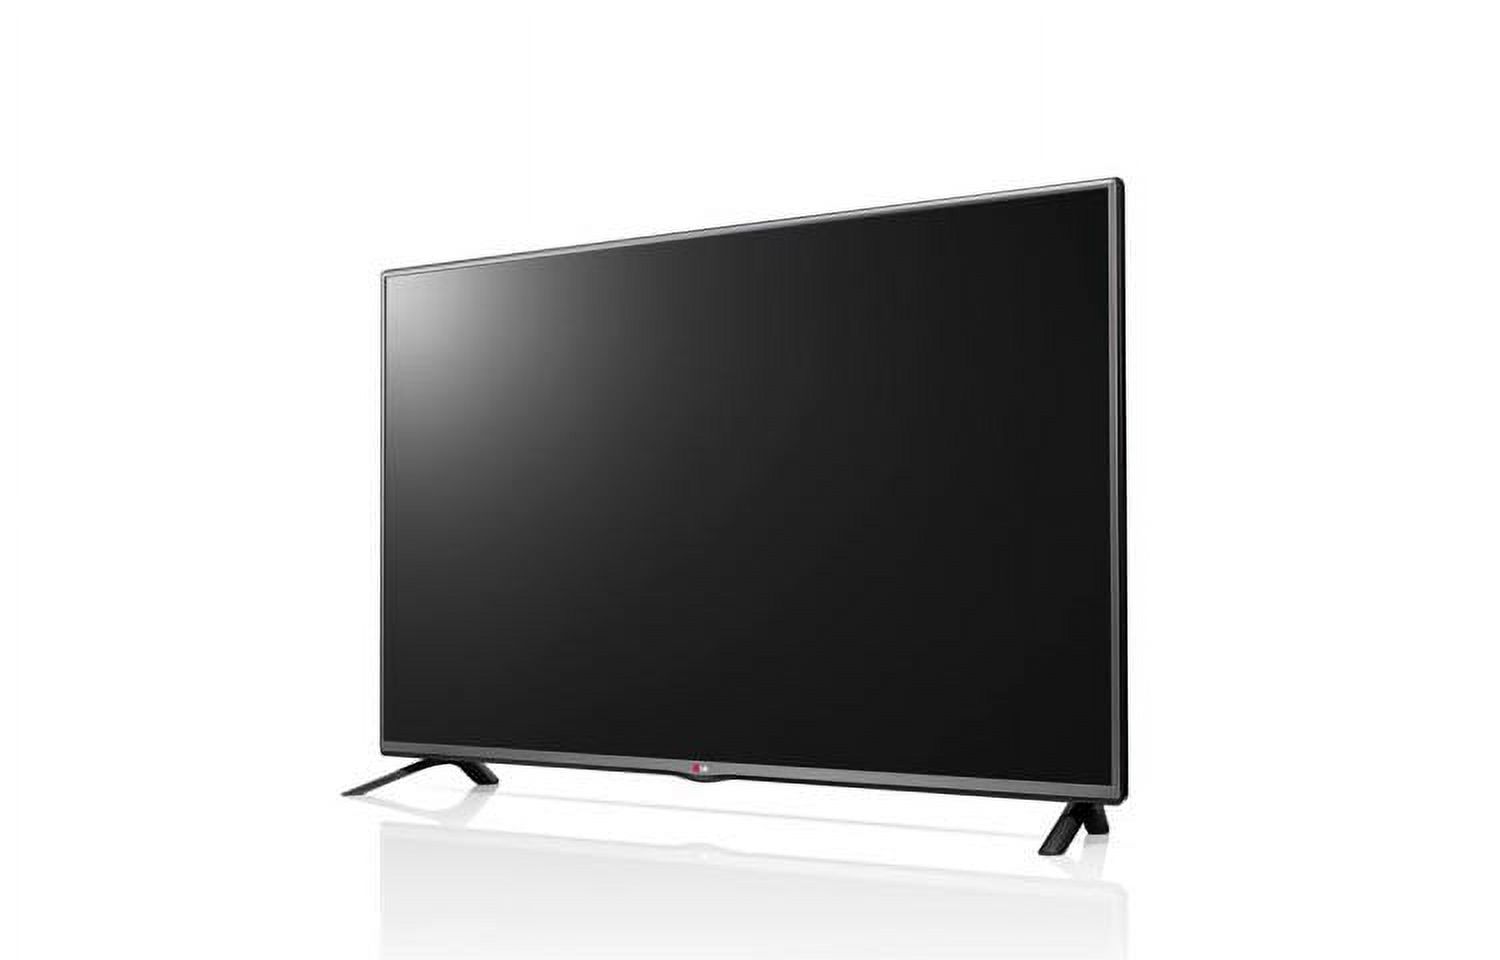 LG 49" Class (48.5" Diagonal) 1080p LED TV (49LB5550) - image 3 of 4